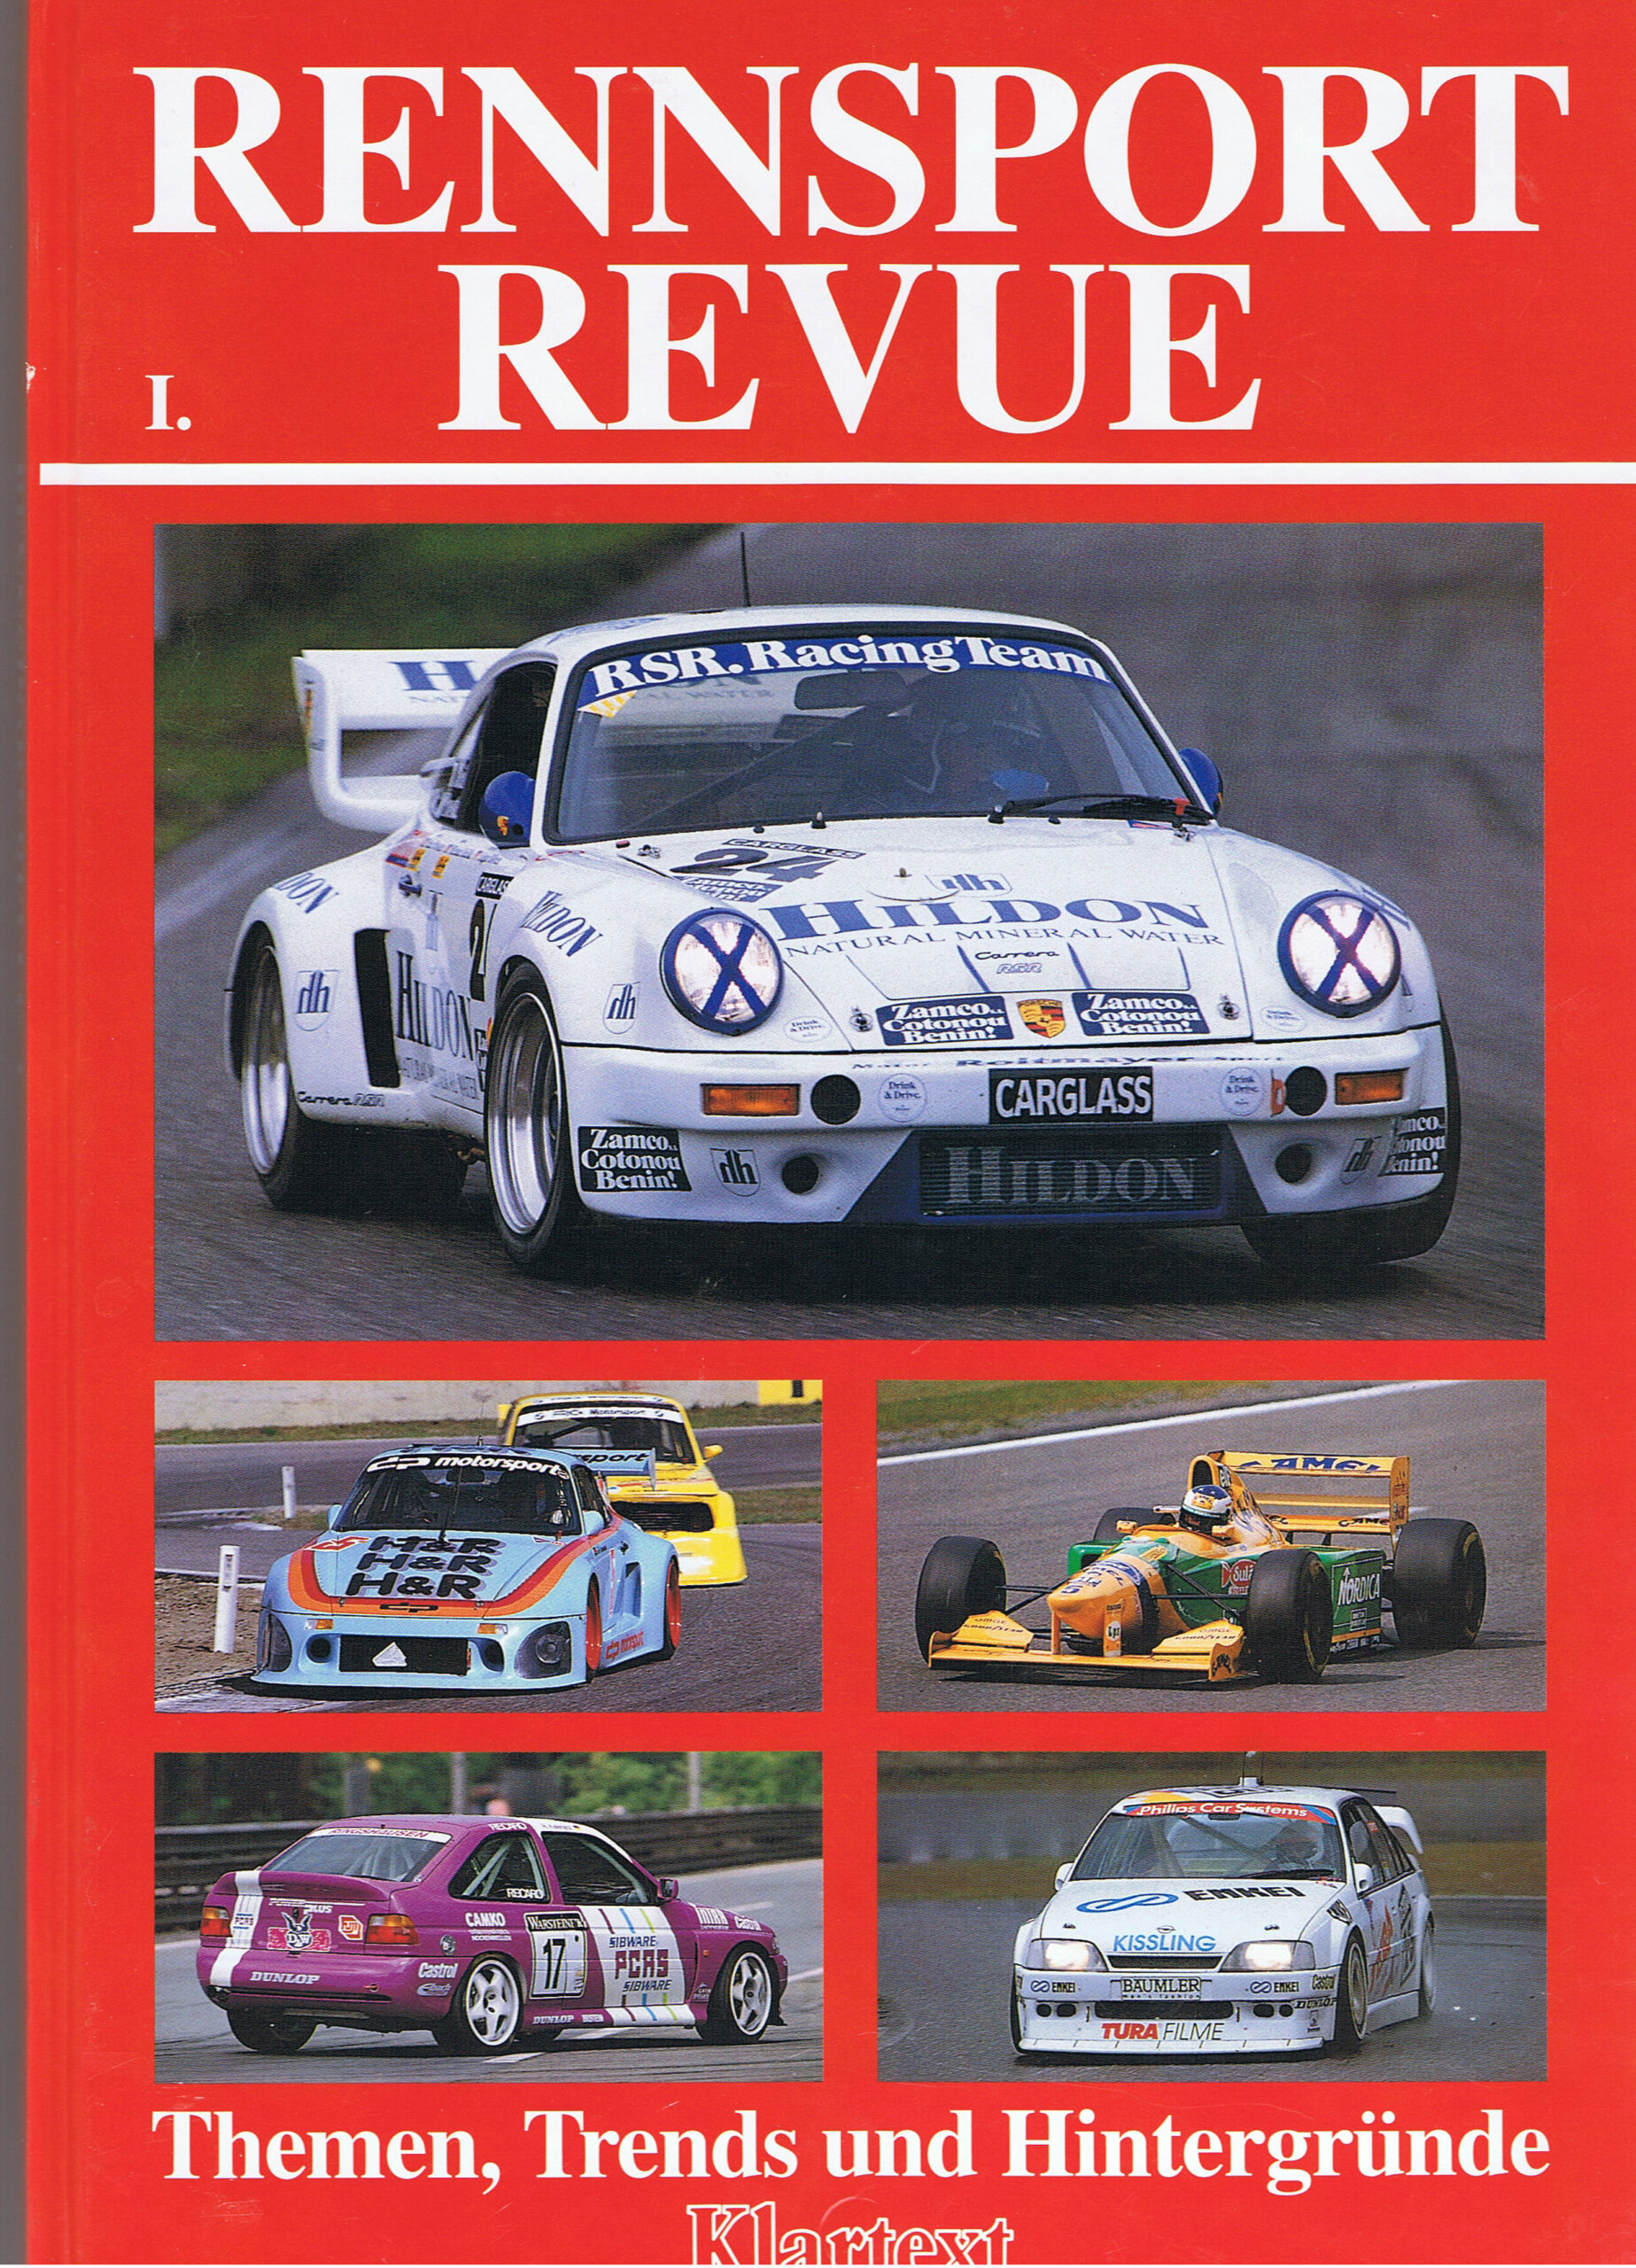 Buch verpasst? Jetzt die letzten Exemplare sichern: rennsport revue®,  erschienen zur Essen Motor Show (26. November 1993). - carsten krome  netzwerkeins